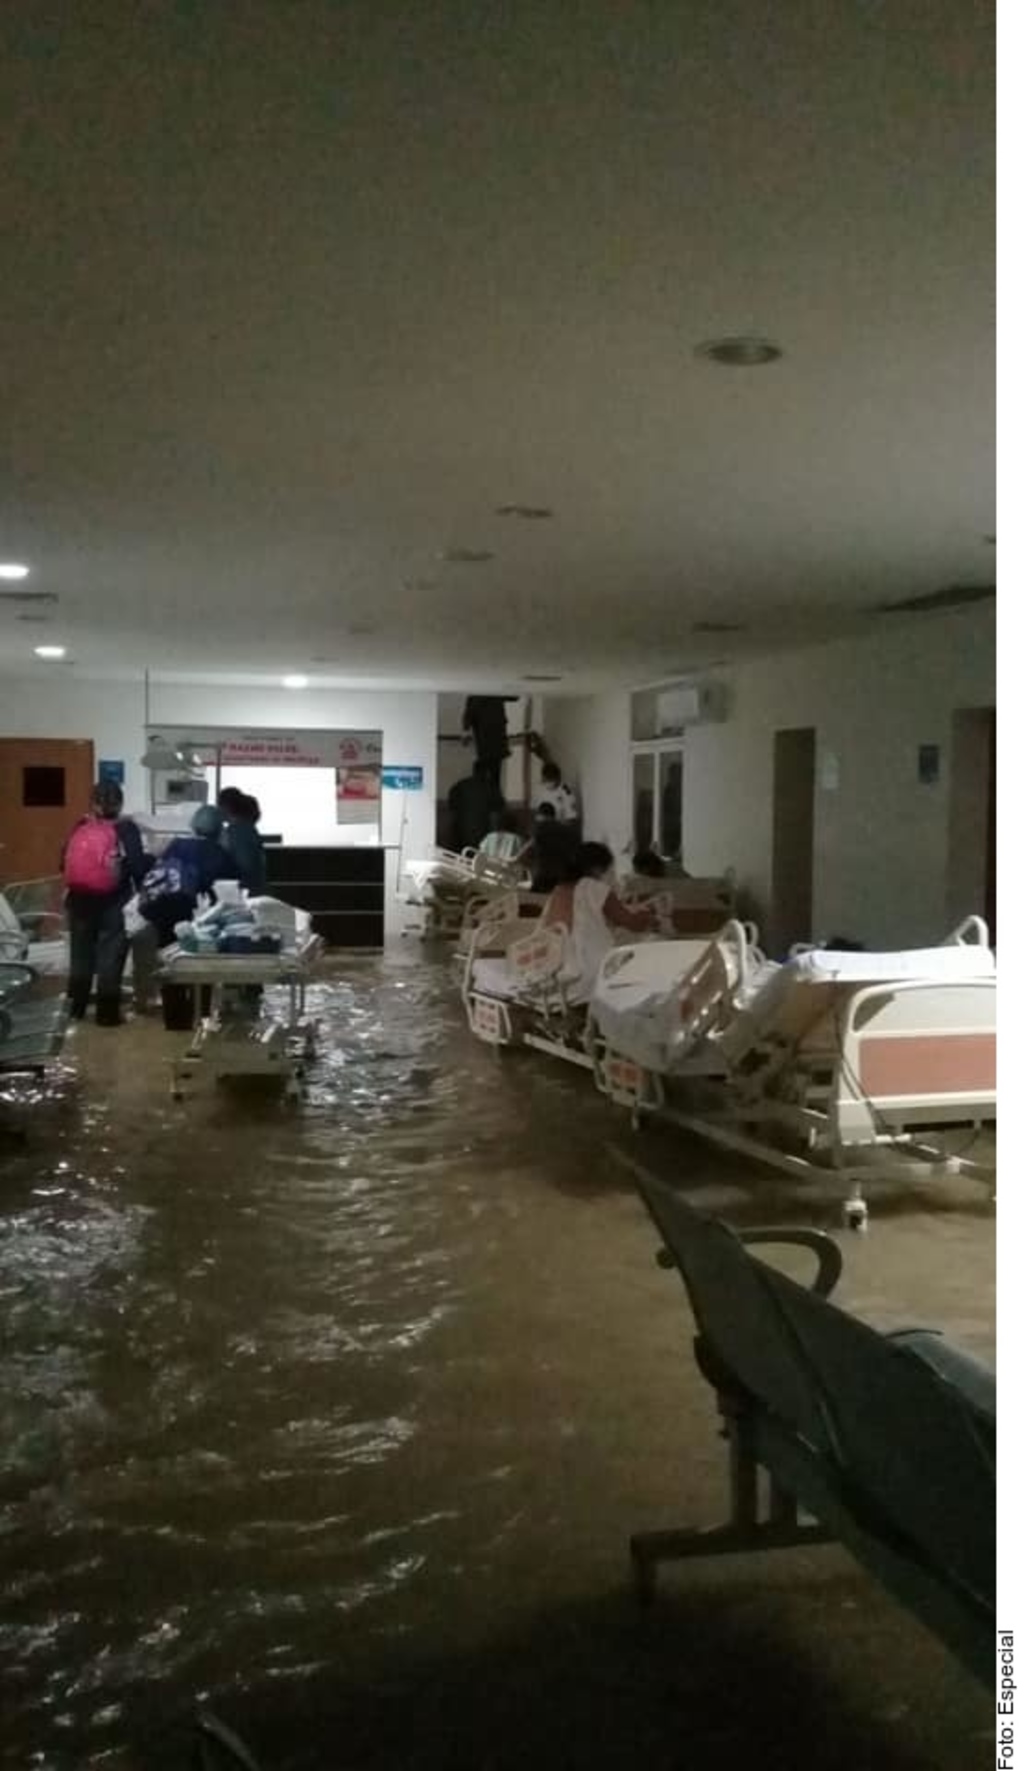 Las intensas lluvias también anegaron diversas áreas del Hospital Materno-Infantil, habilitado como centro médico general debido a la contingencia por el coronavirus, que ha convertido a Reynosa en el municipio con más casos y muertes de Tamaulipas.